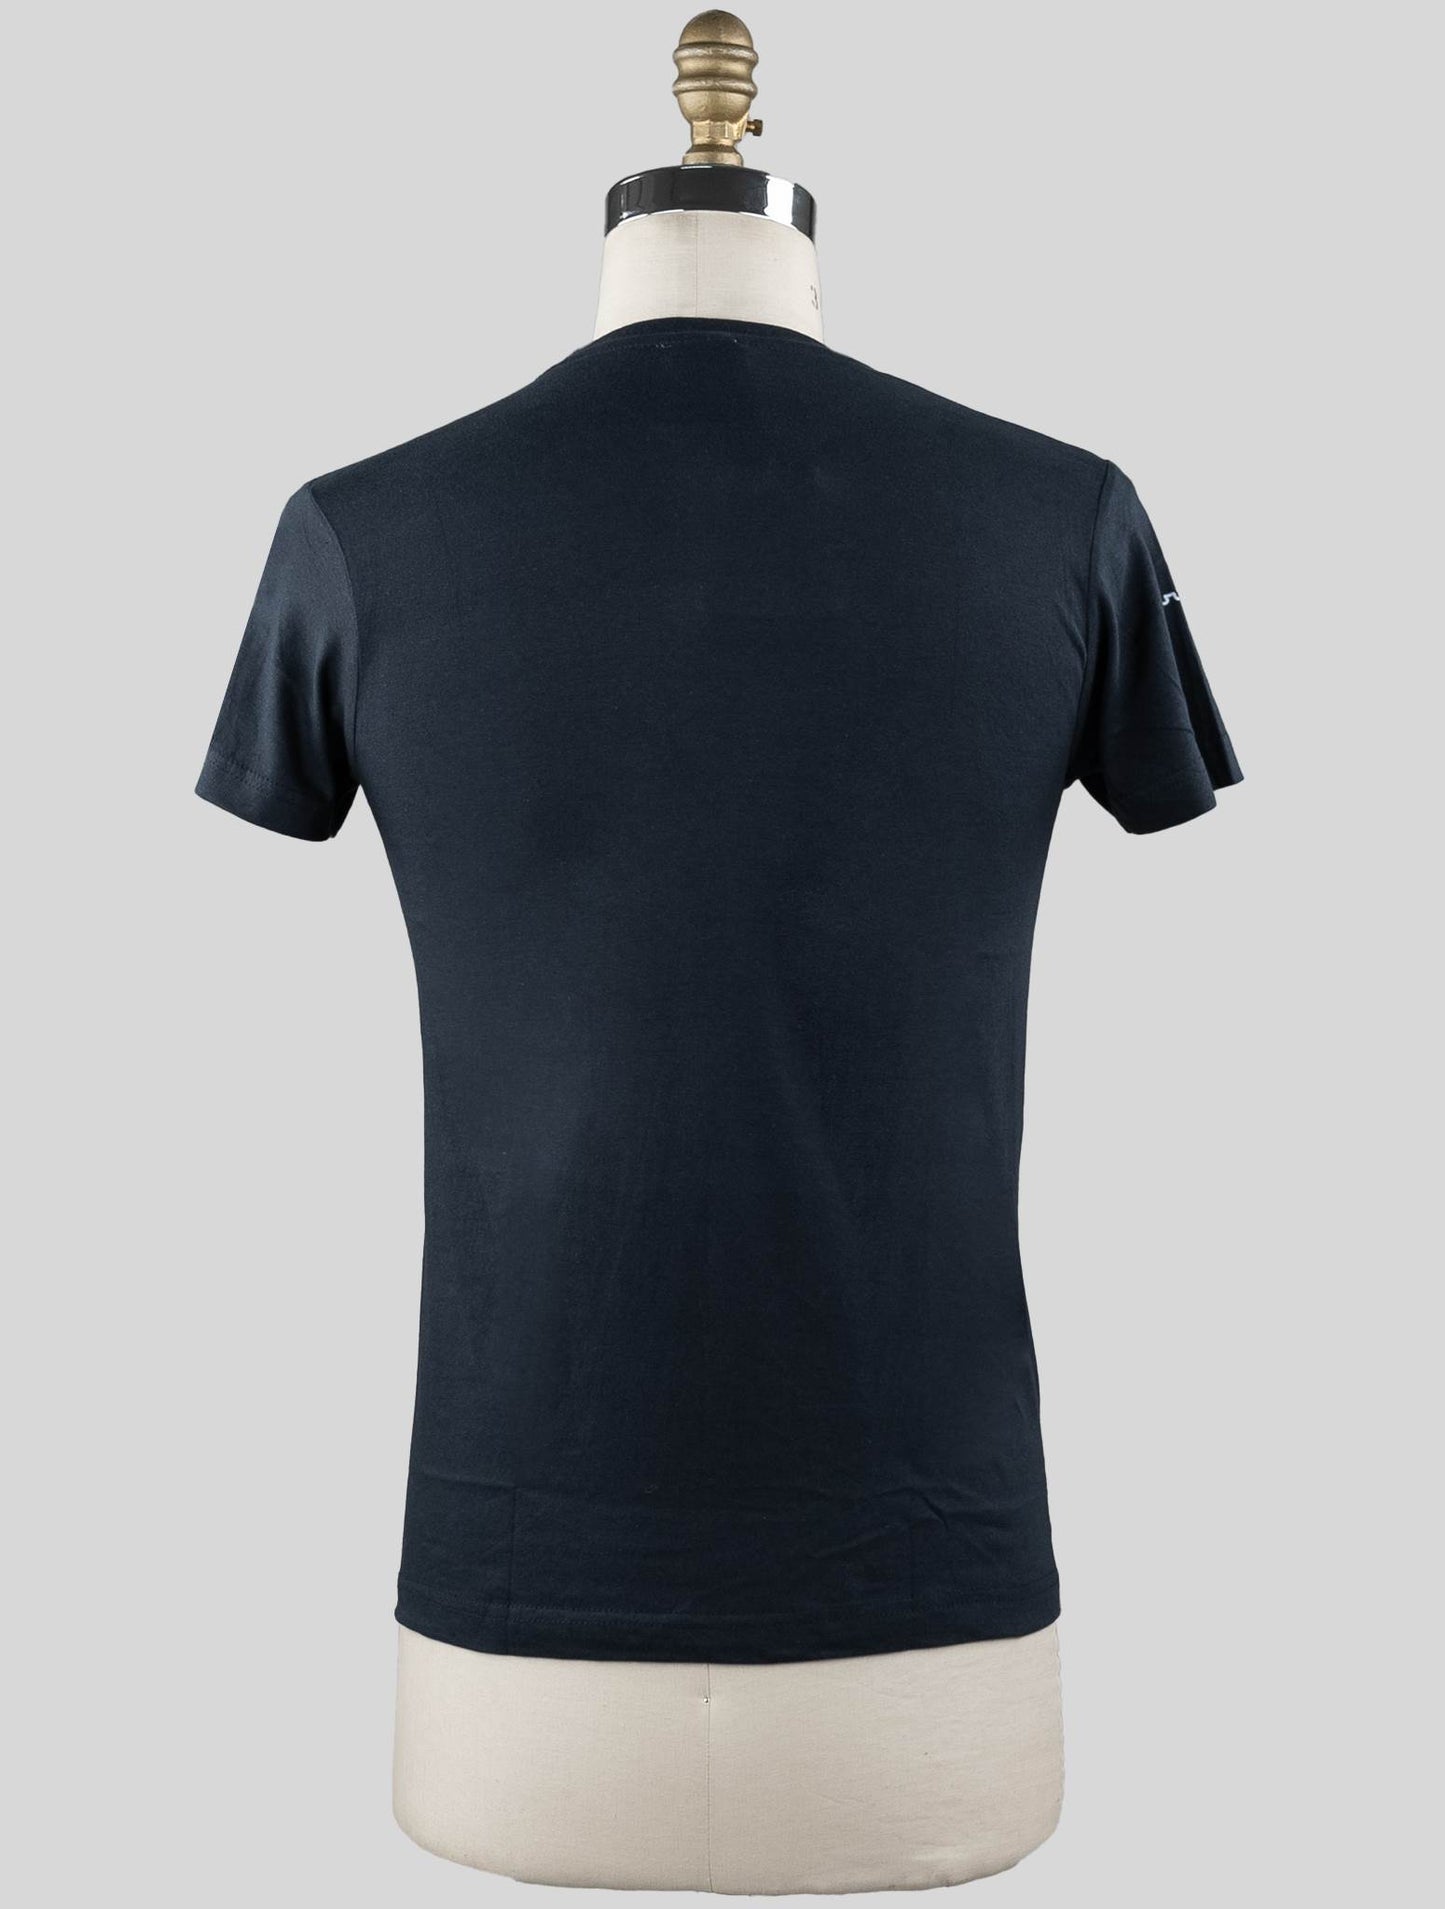 Сарторио Наполи синий темно-синий хлопок футболка Специальный выпуск